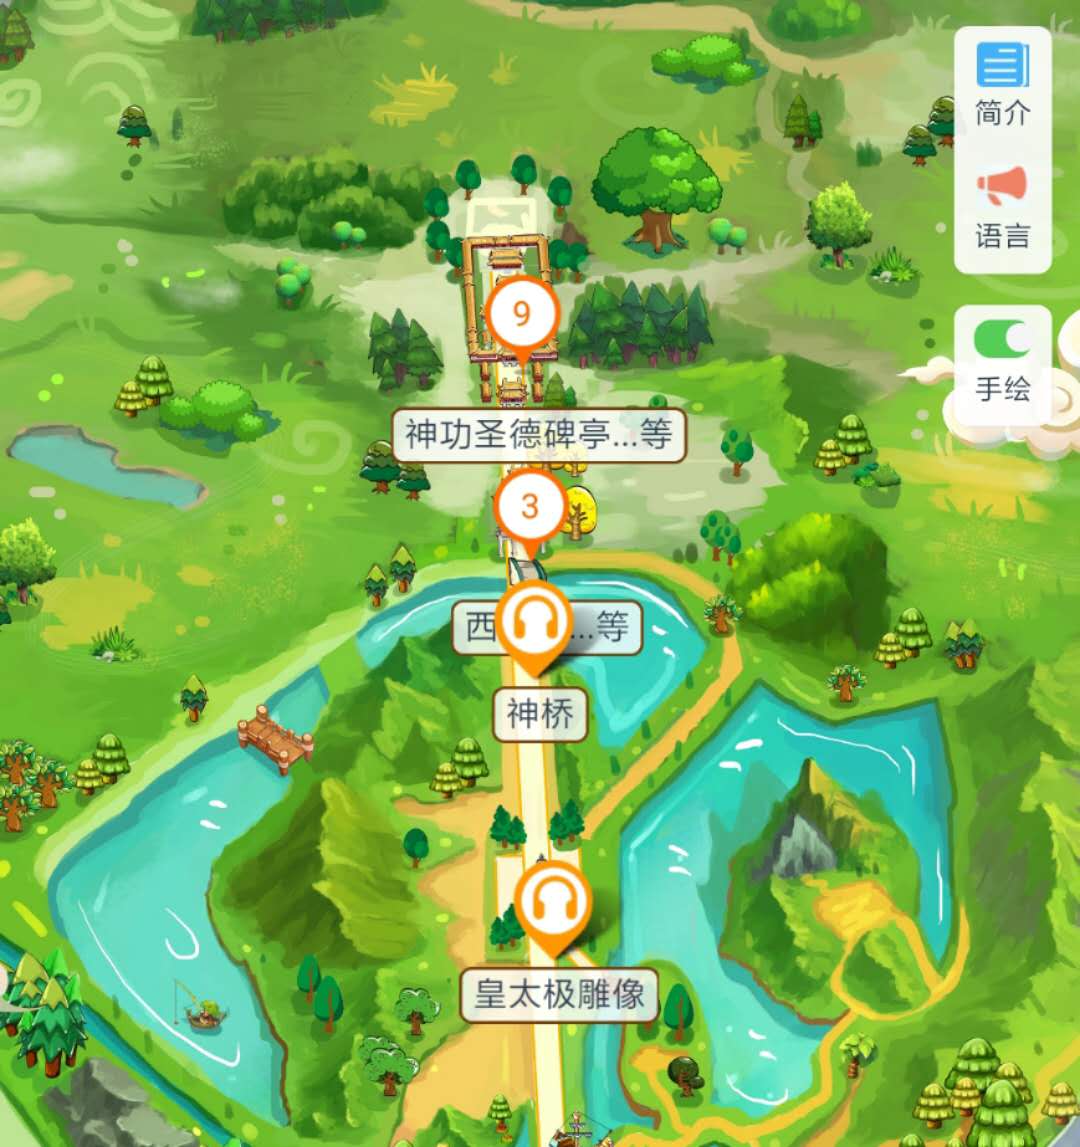 辽宁沈阳北陵公园手绘地图、语音讲解、智能导览.jpg